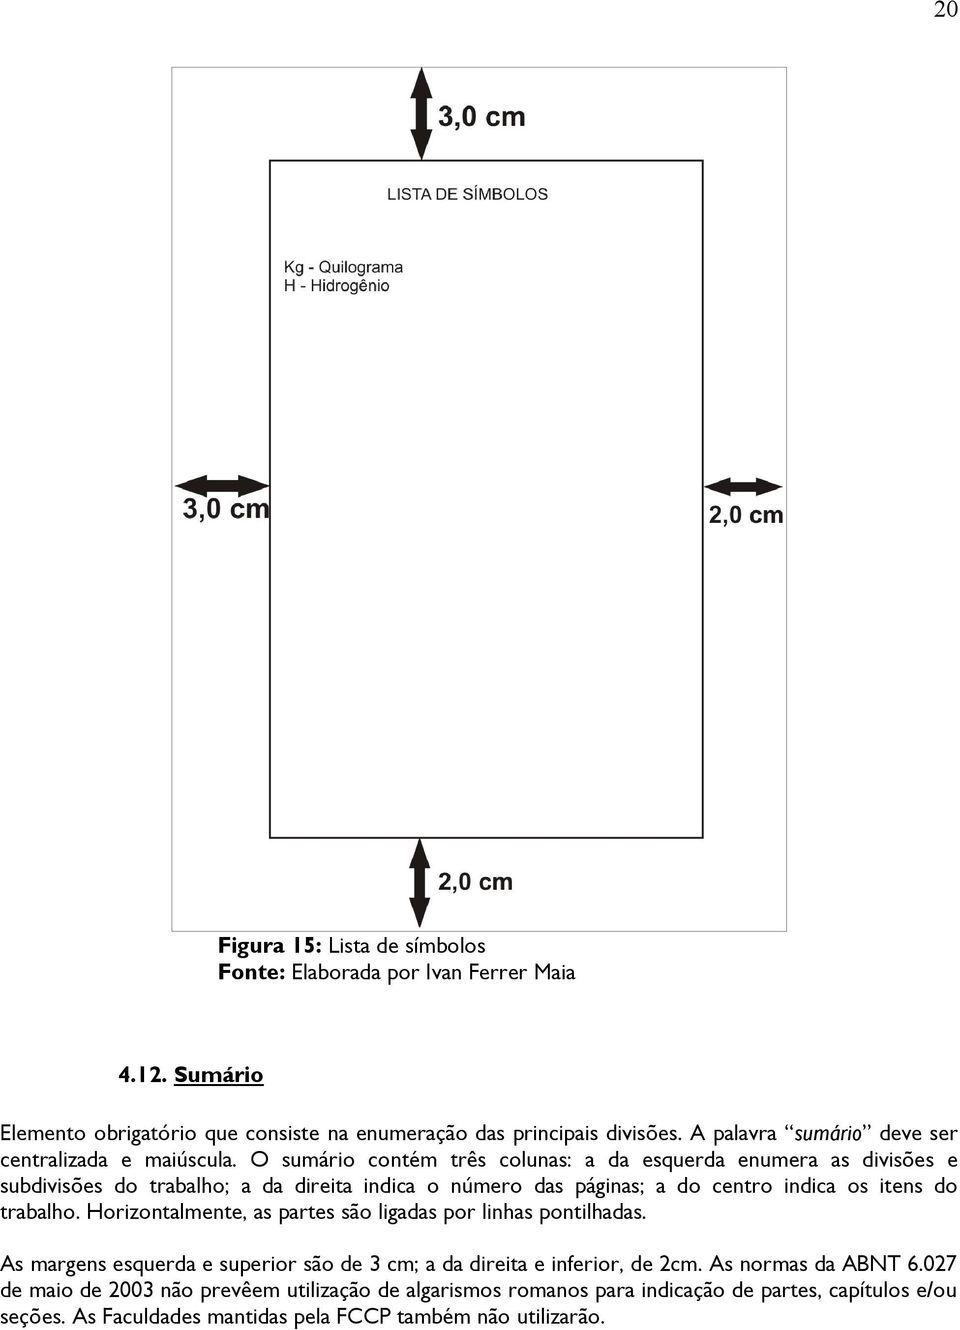 O sumário contém três colunas: a da esquerda enumera as divisões e subdivisões do trabalho; a da direita indica o número das páginas; a do centro indica os itens do